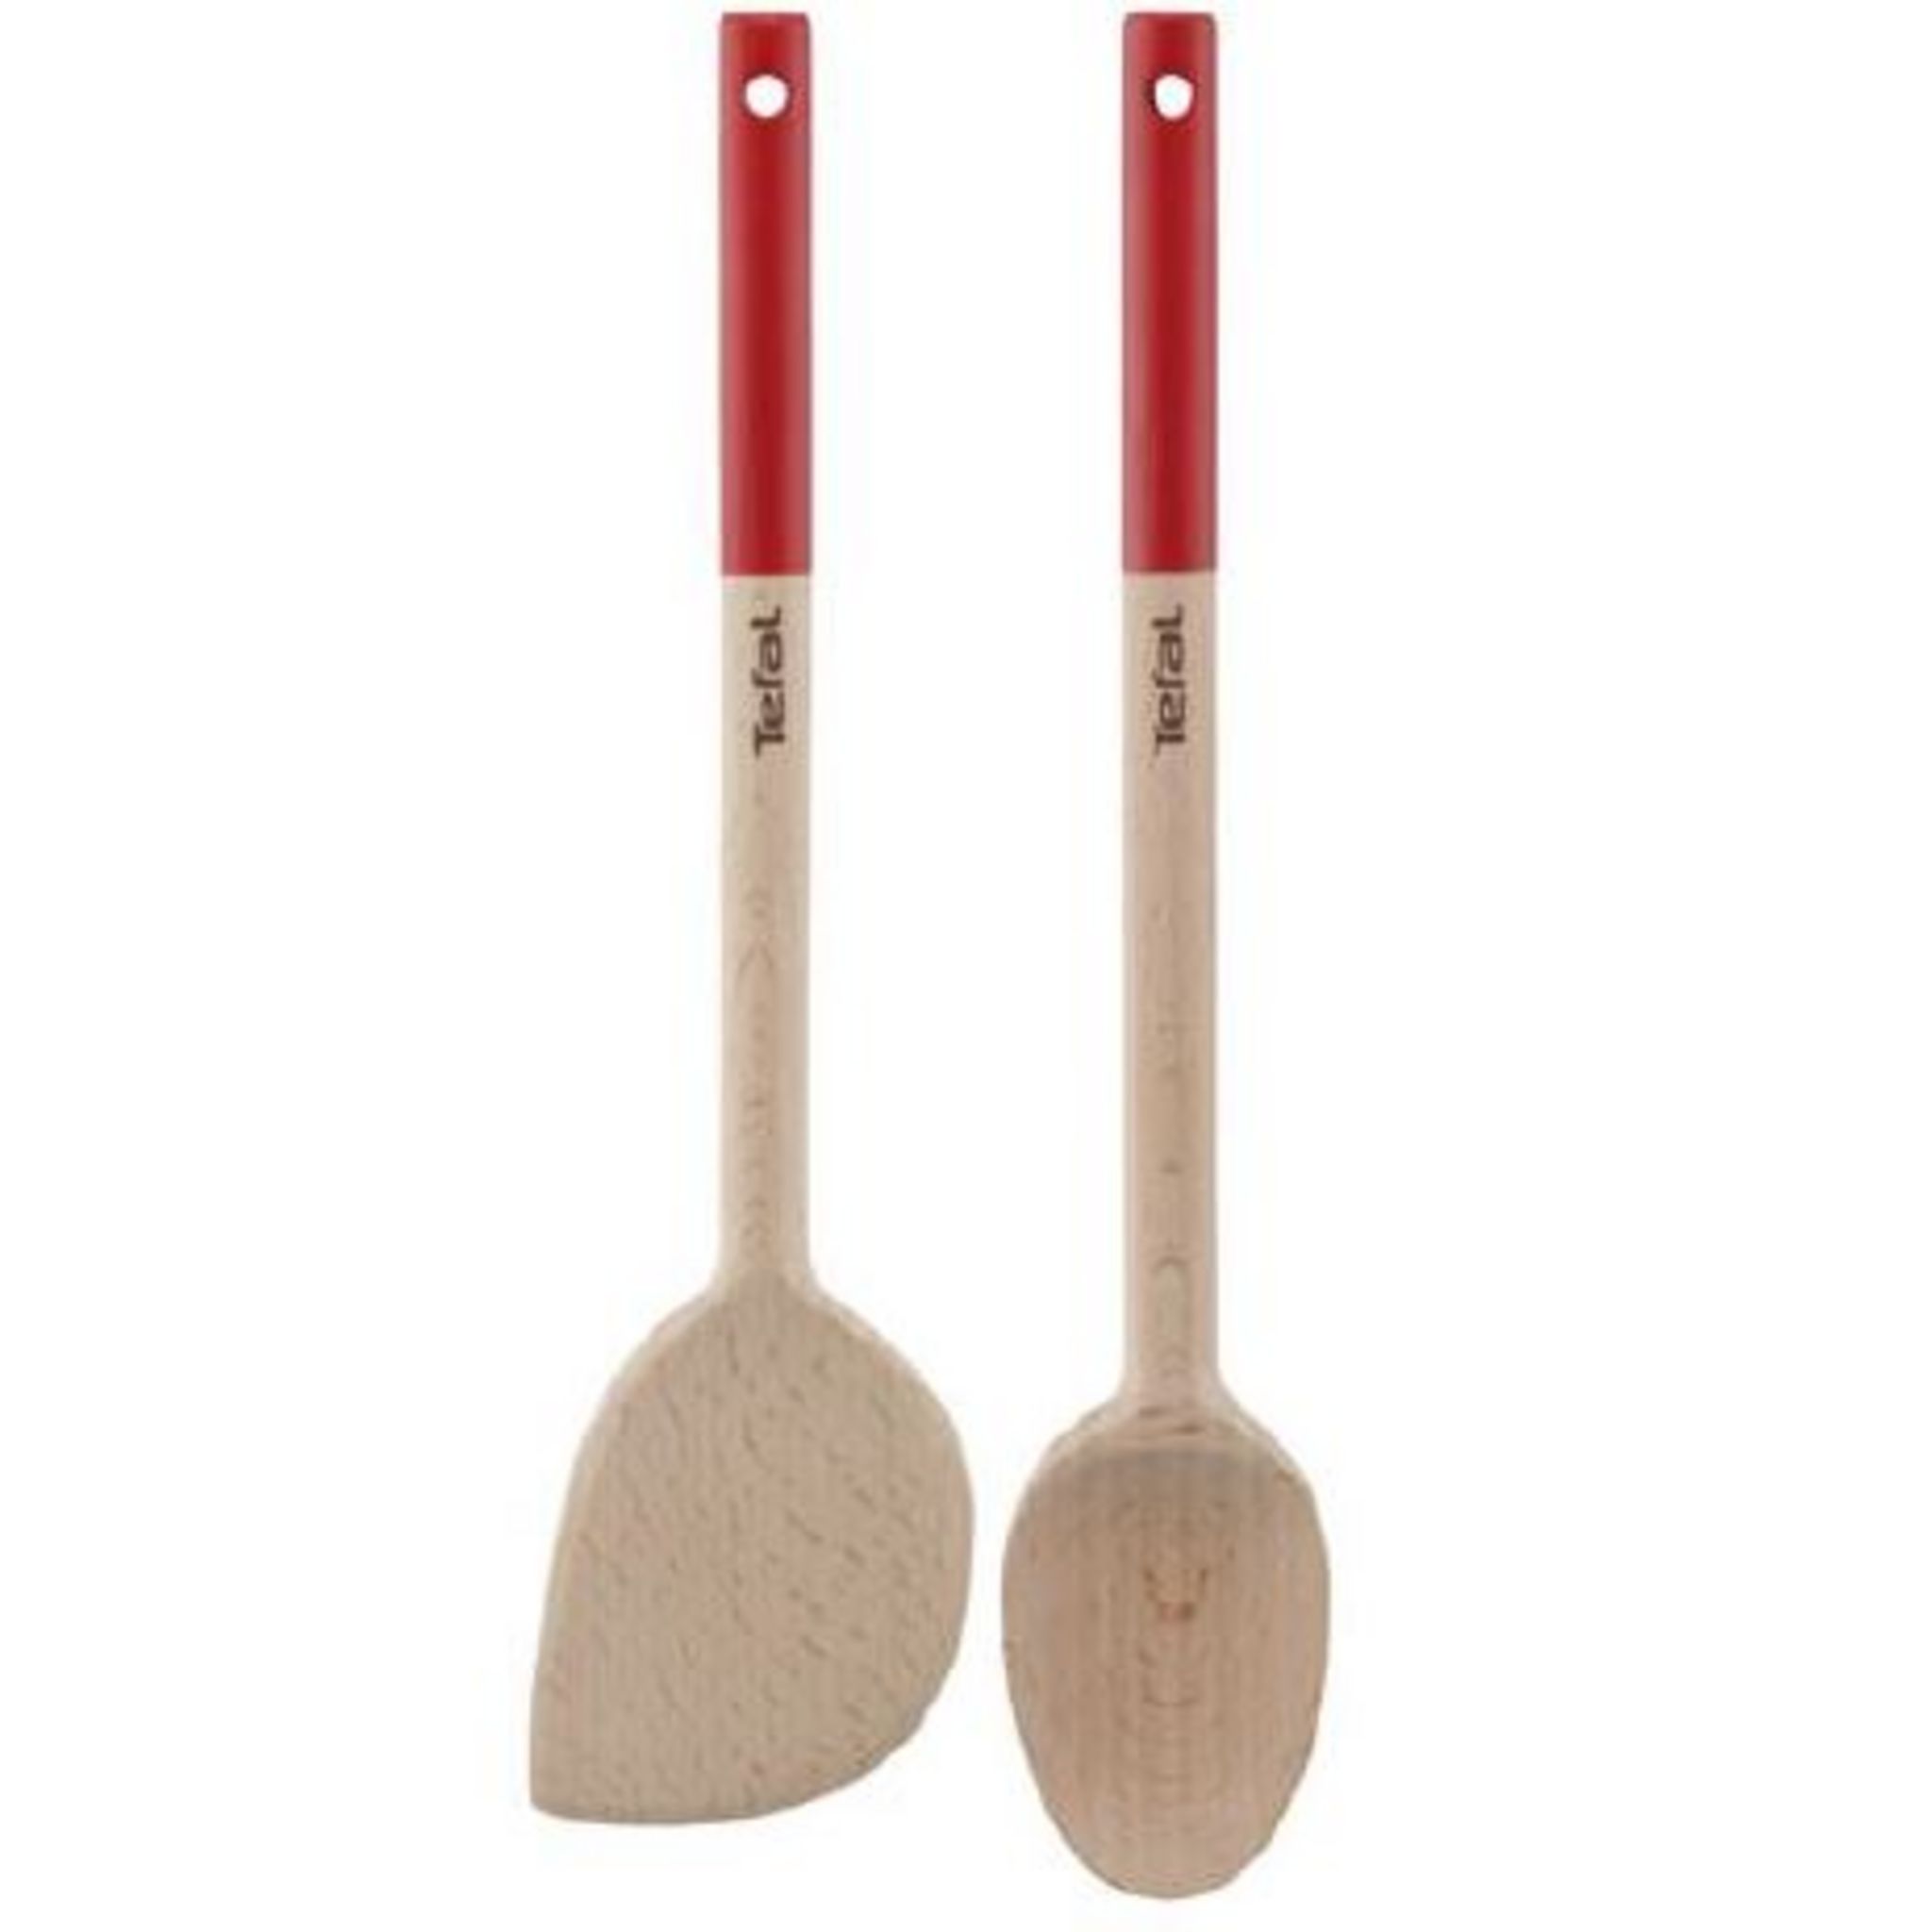 TEFAL Lot de 2 ustensiles : 1 spatules + 1 cuillère en bois pas cher 